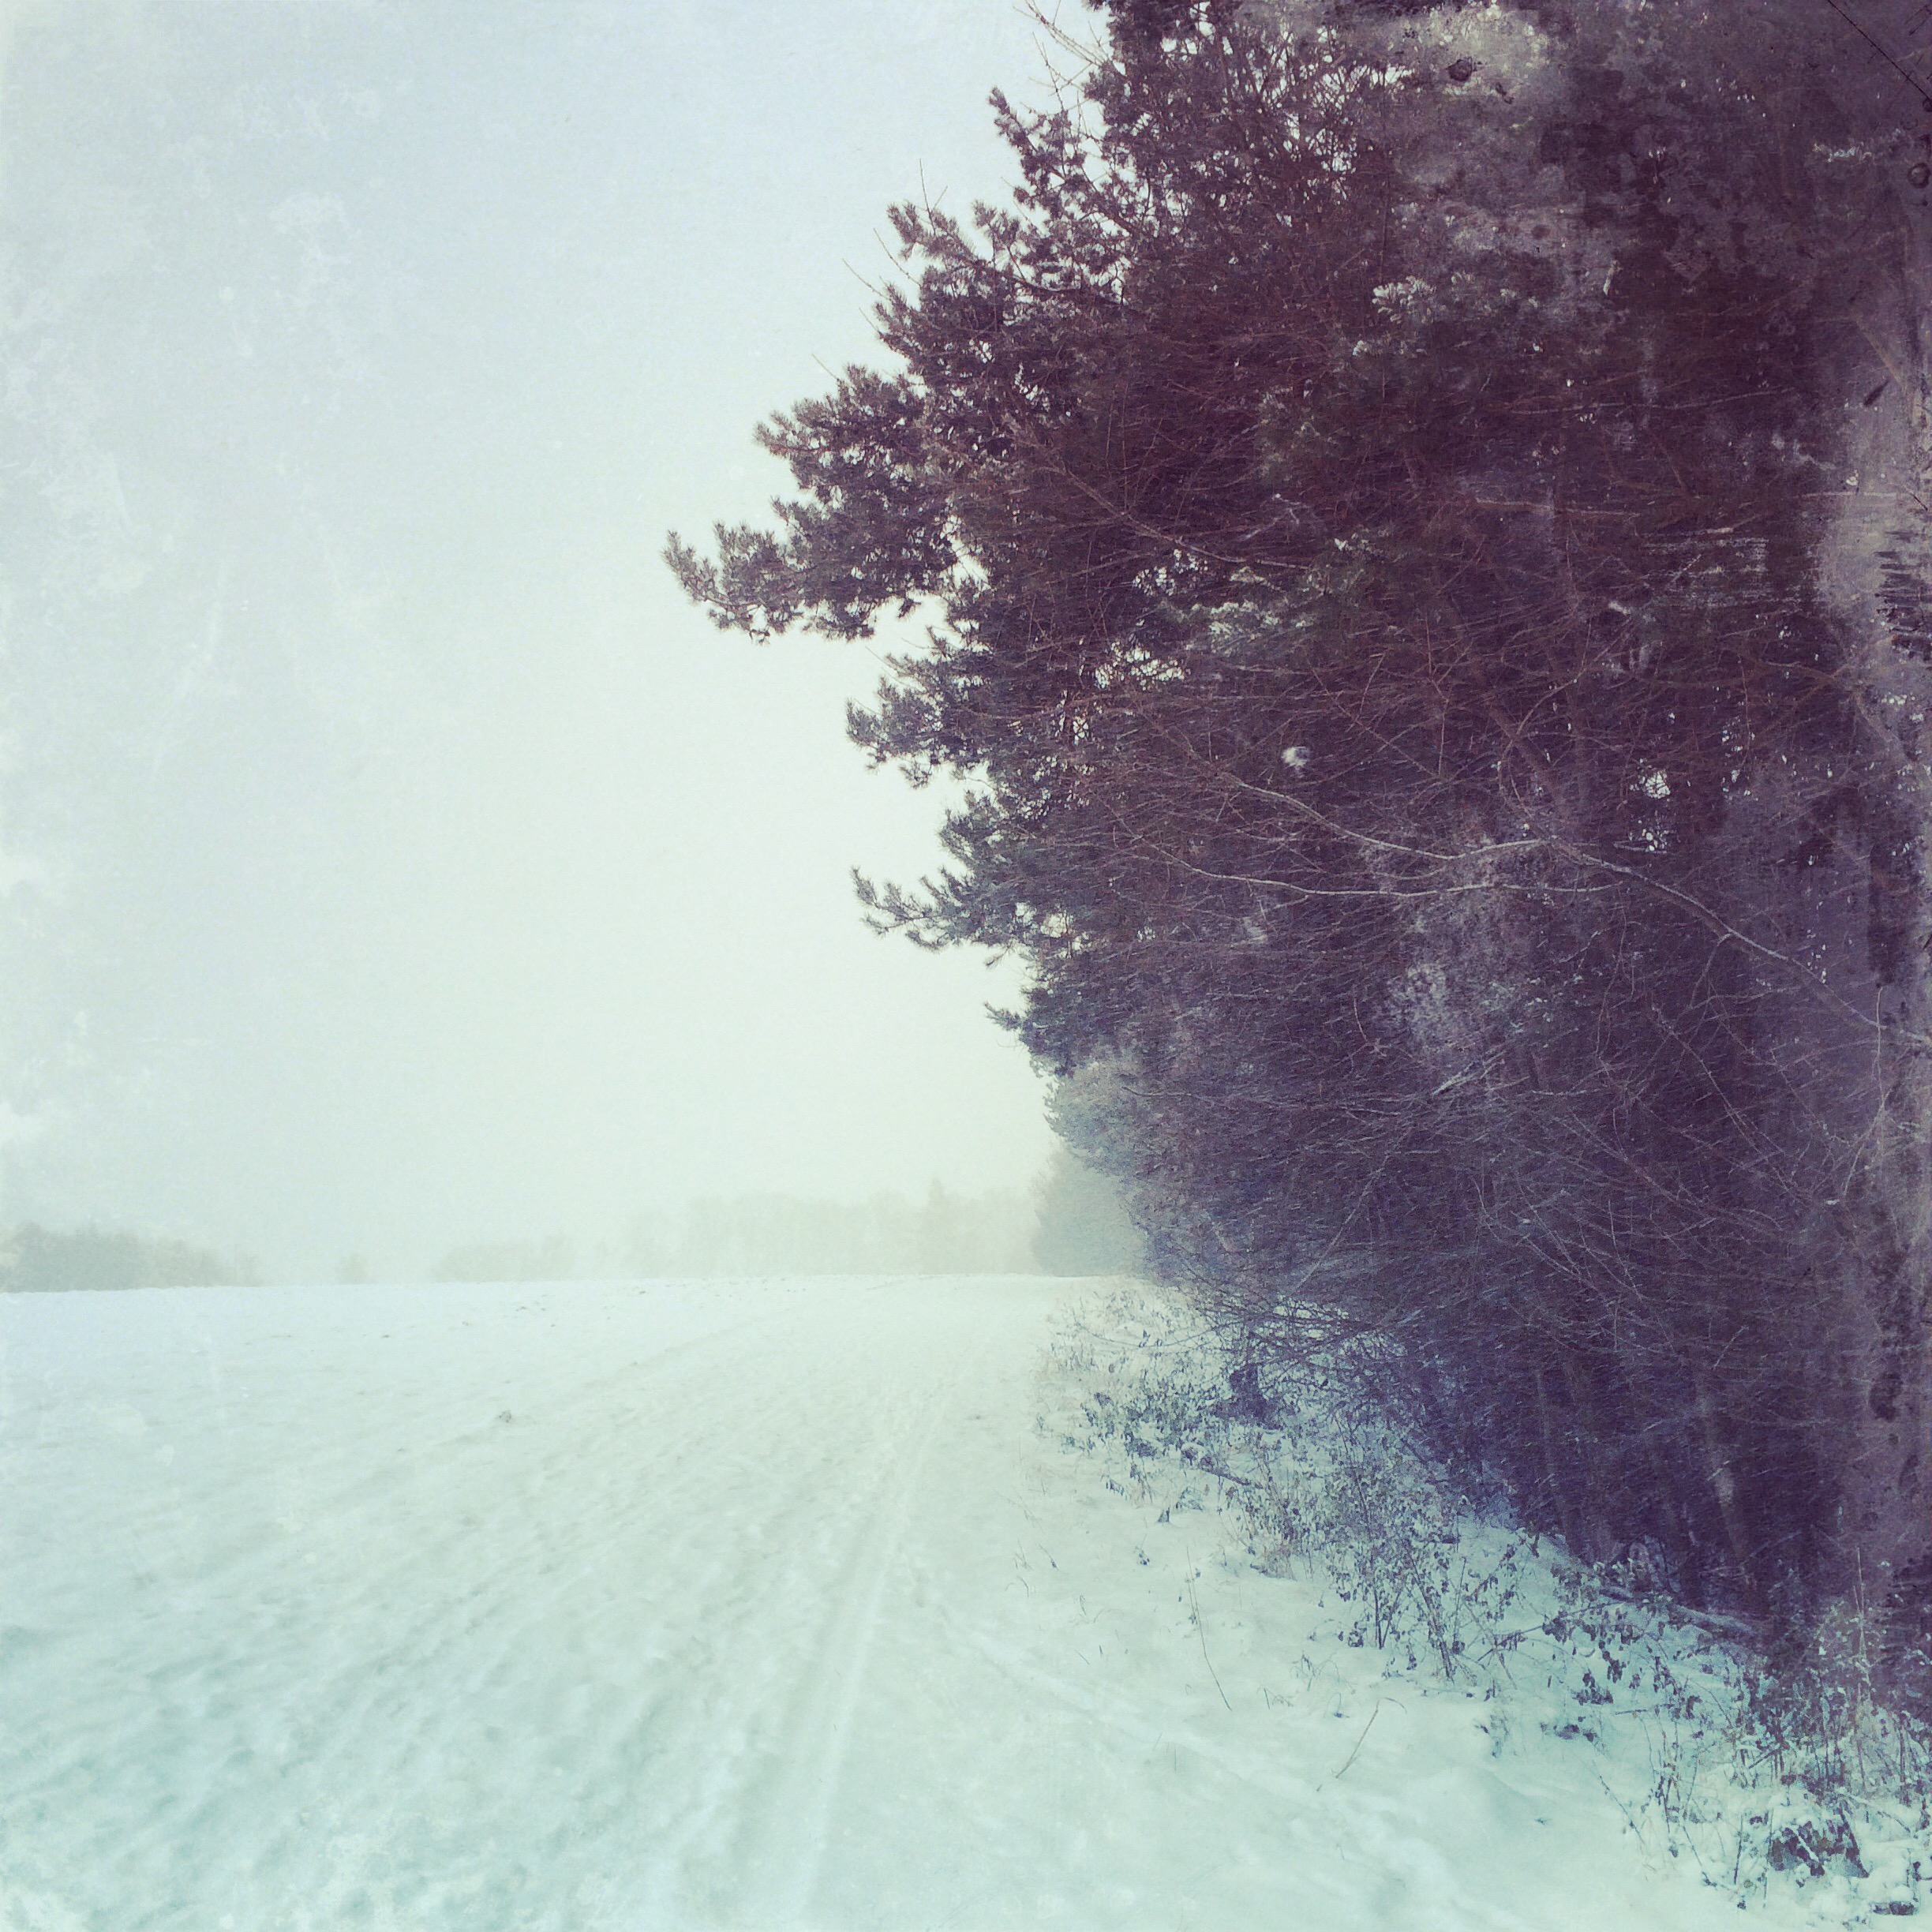 Winterlandschaft in Monochrom, Ampertal 2014